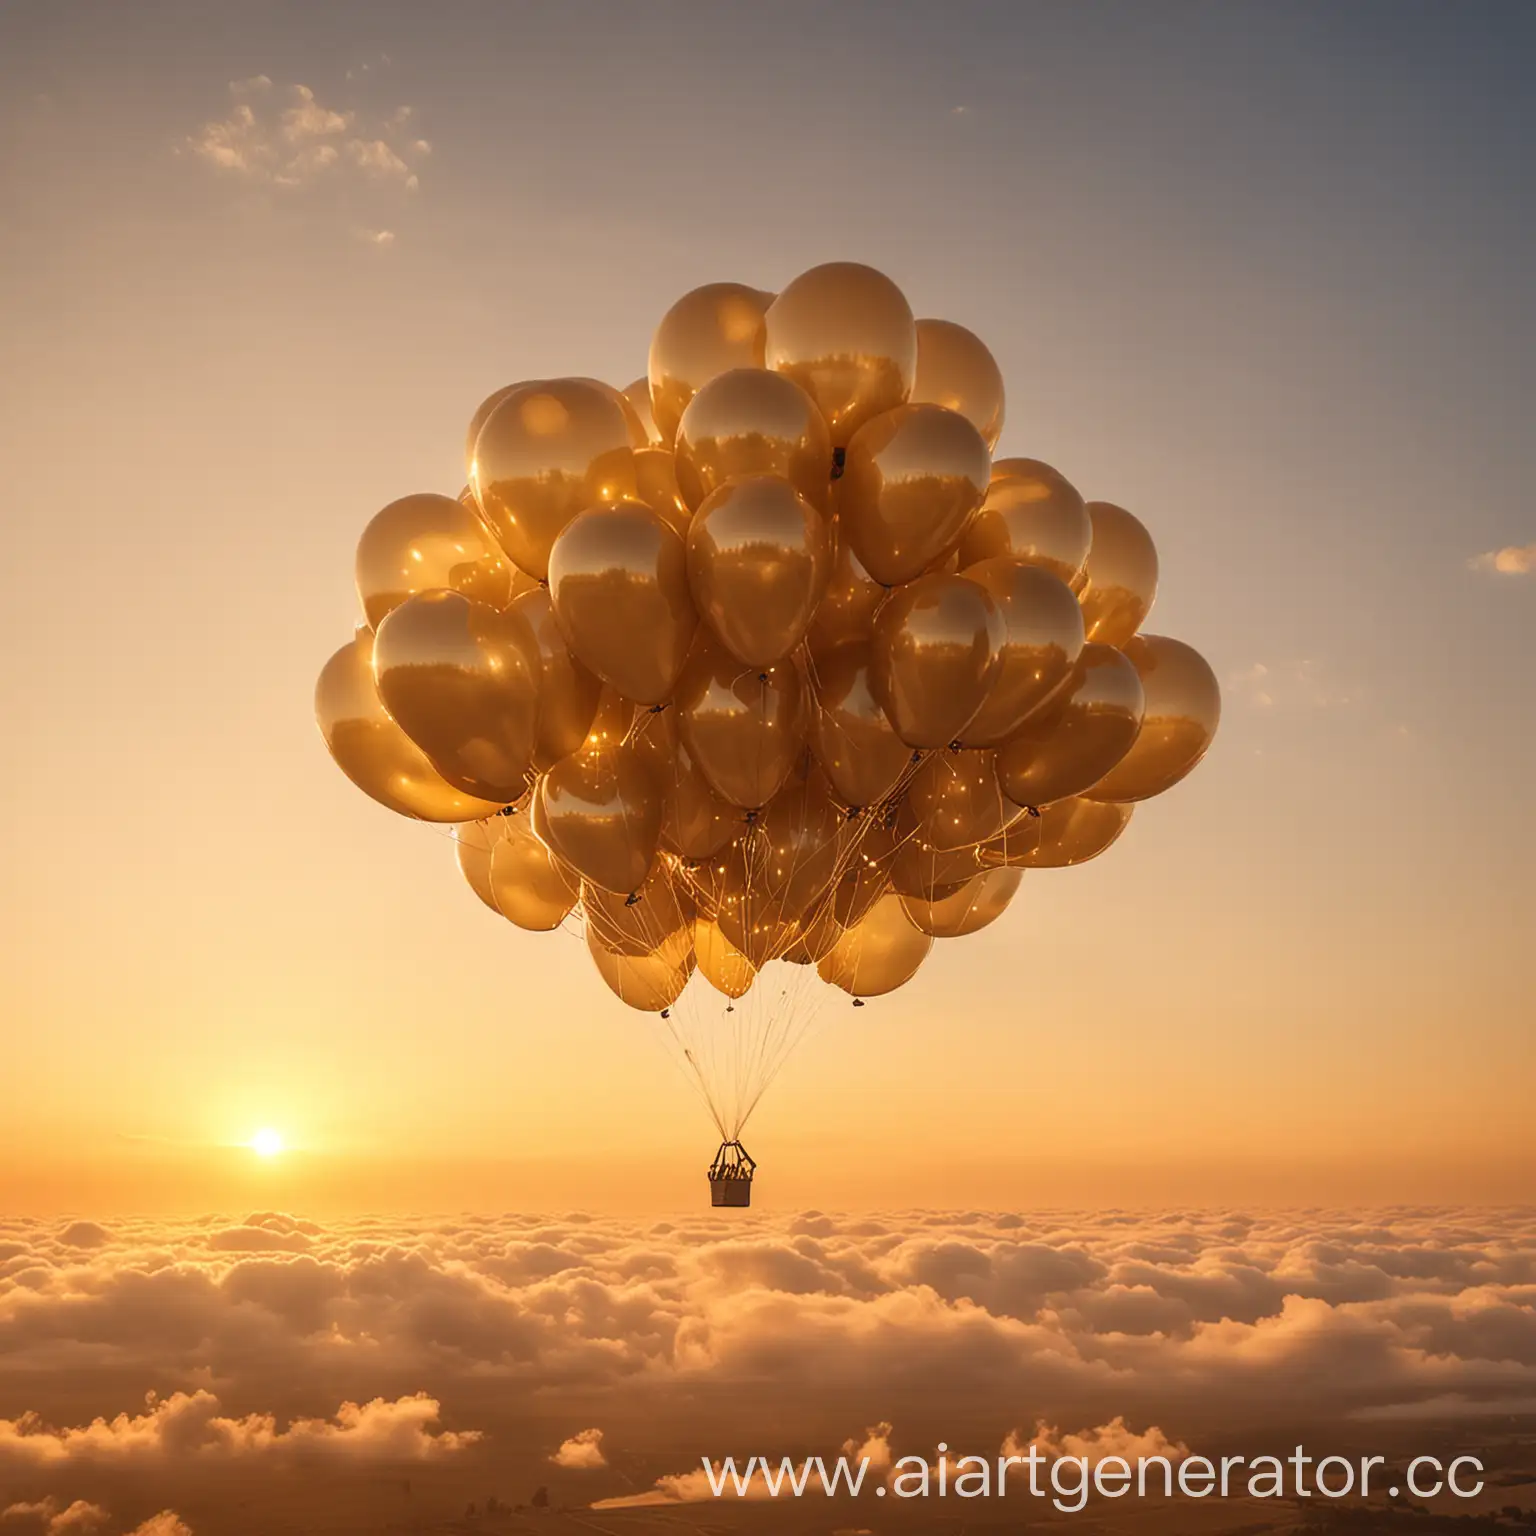 Golden-Haze-Gel-Air-Balloons-Cloud-at-Sunset-Sky